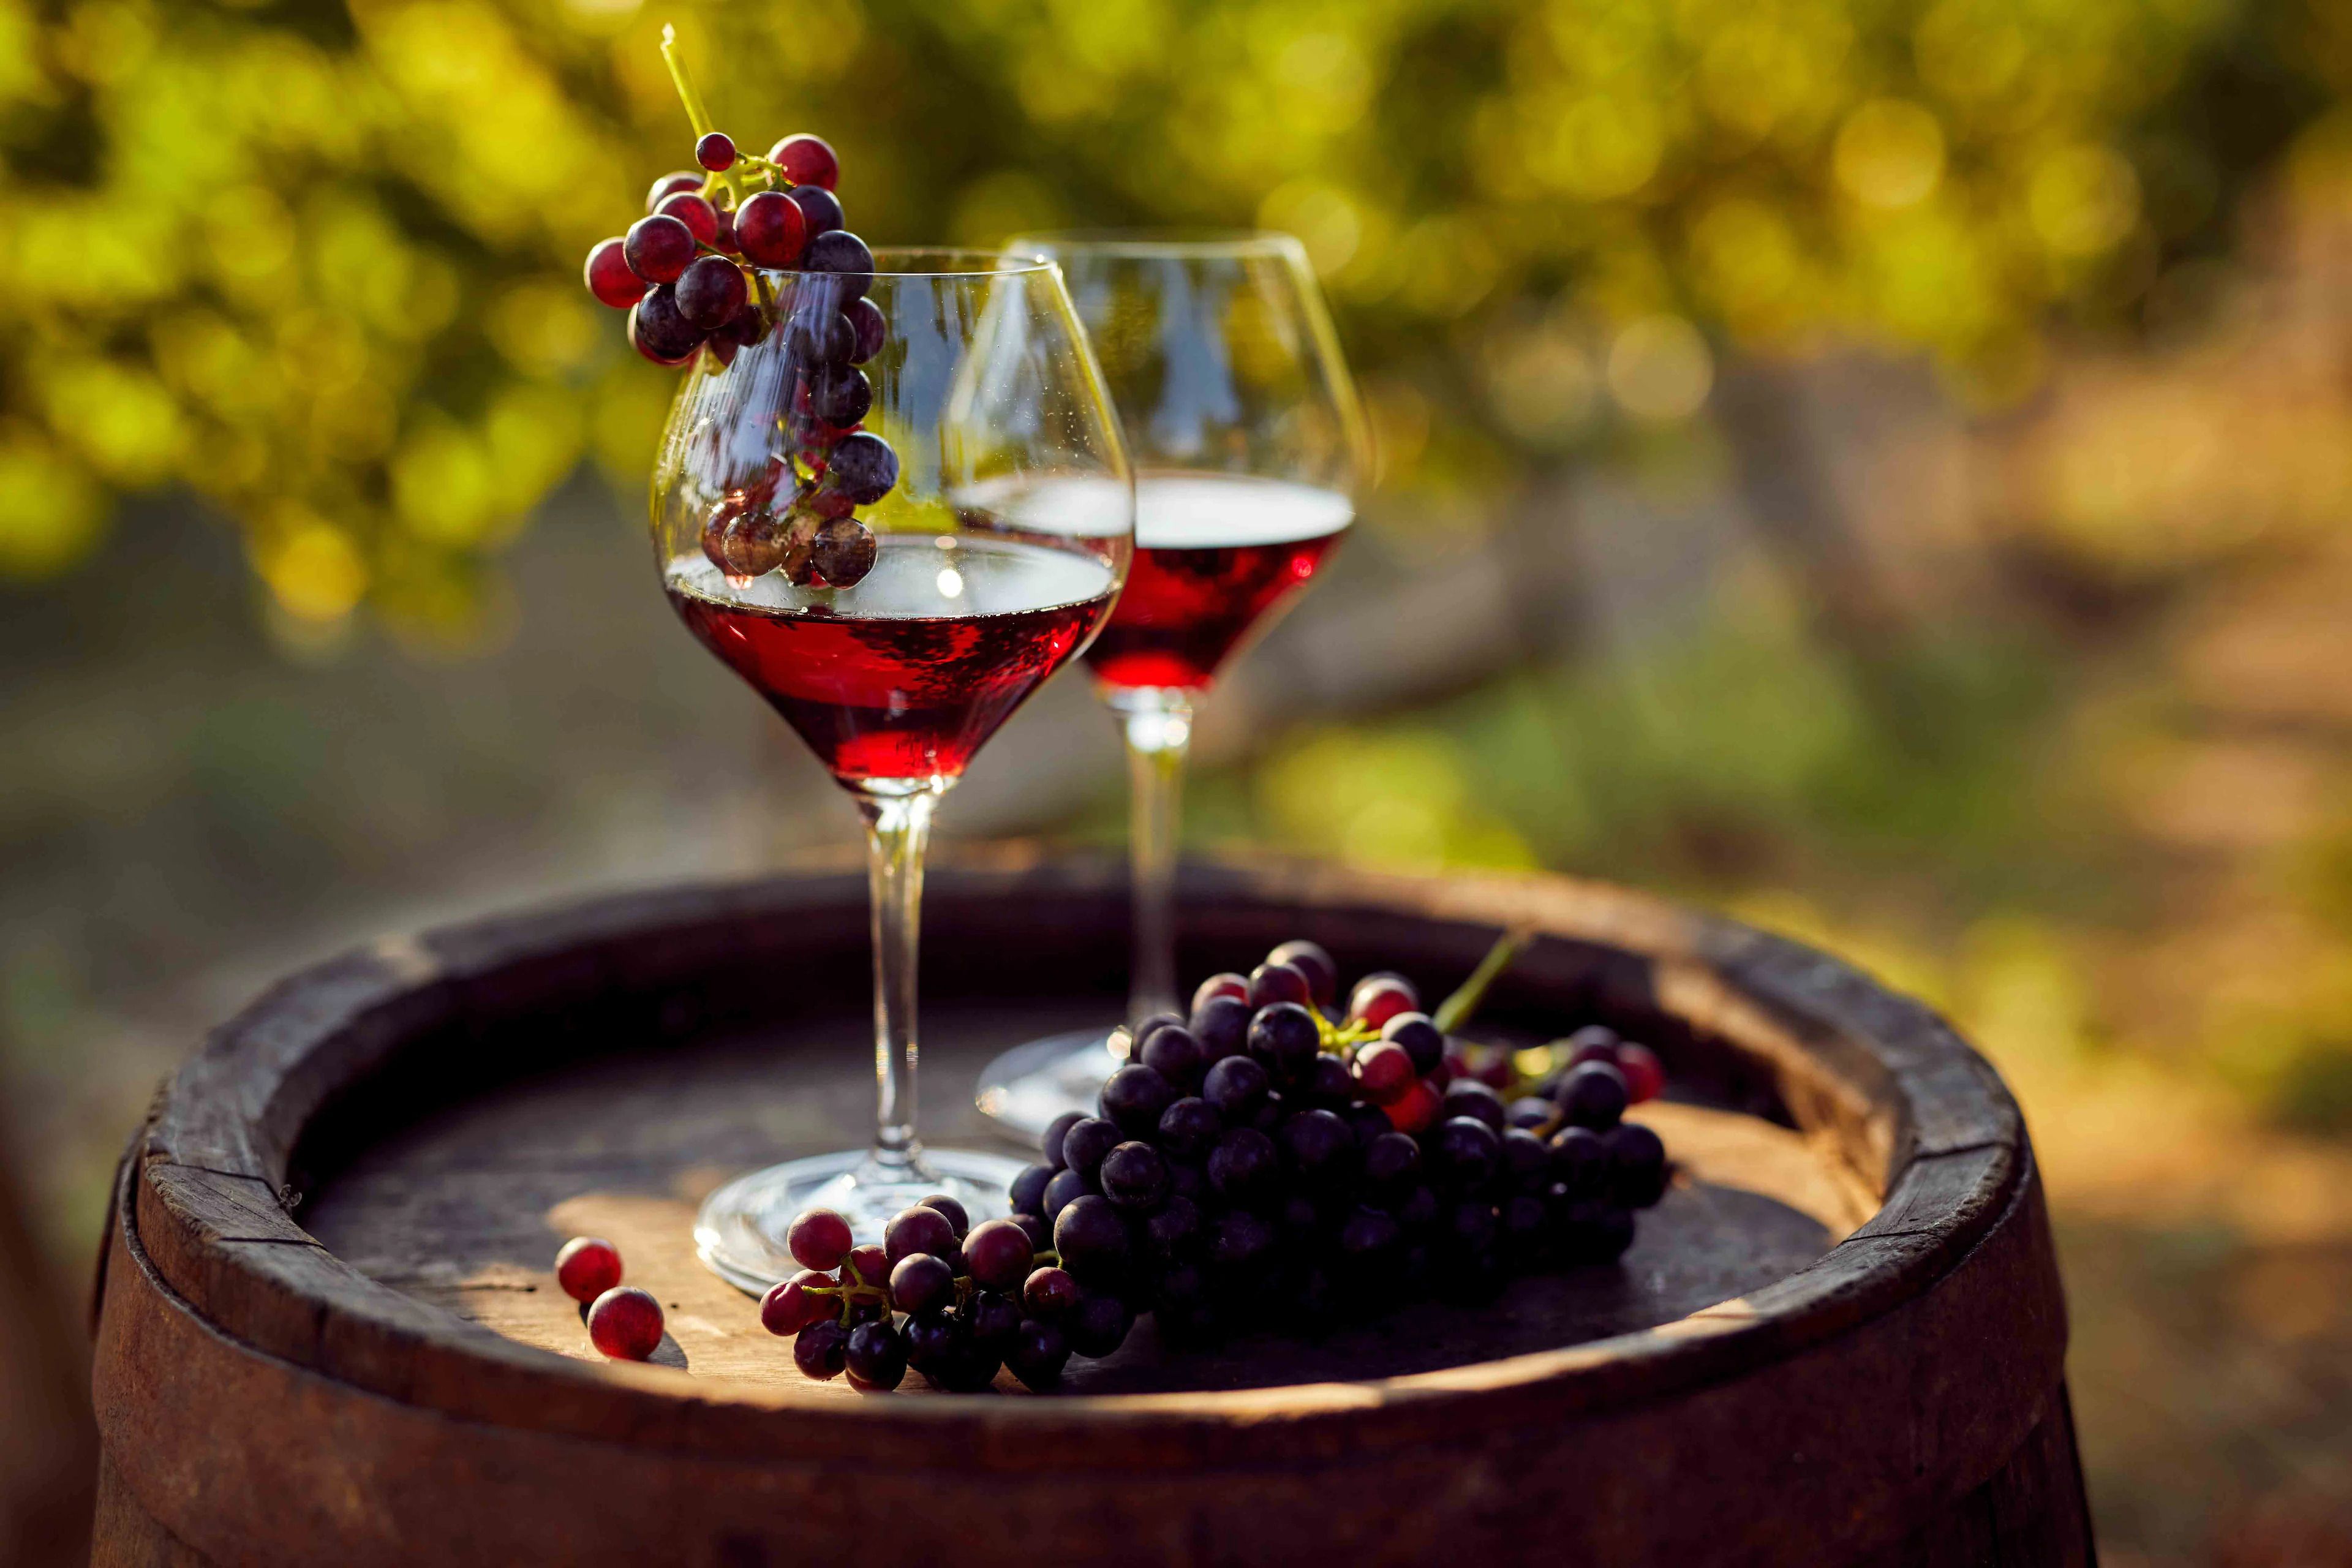 szív egészségére vörösbor előnyei